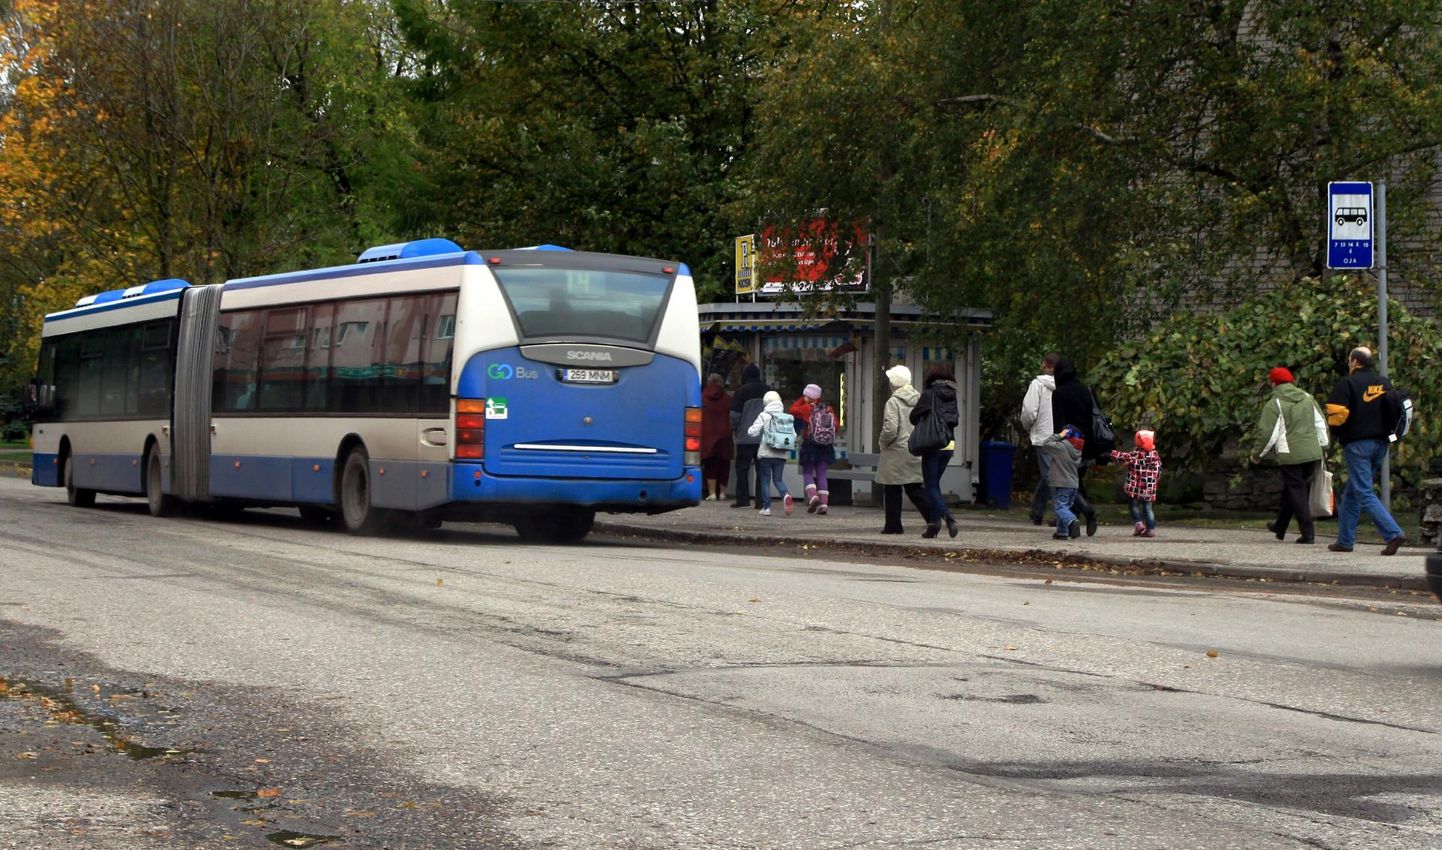 Tallinna inimeste privileeg – tasuta ühistransport – on nüüd reaalsus ülejäänud Eestile.